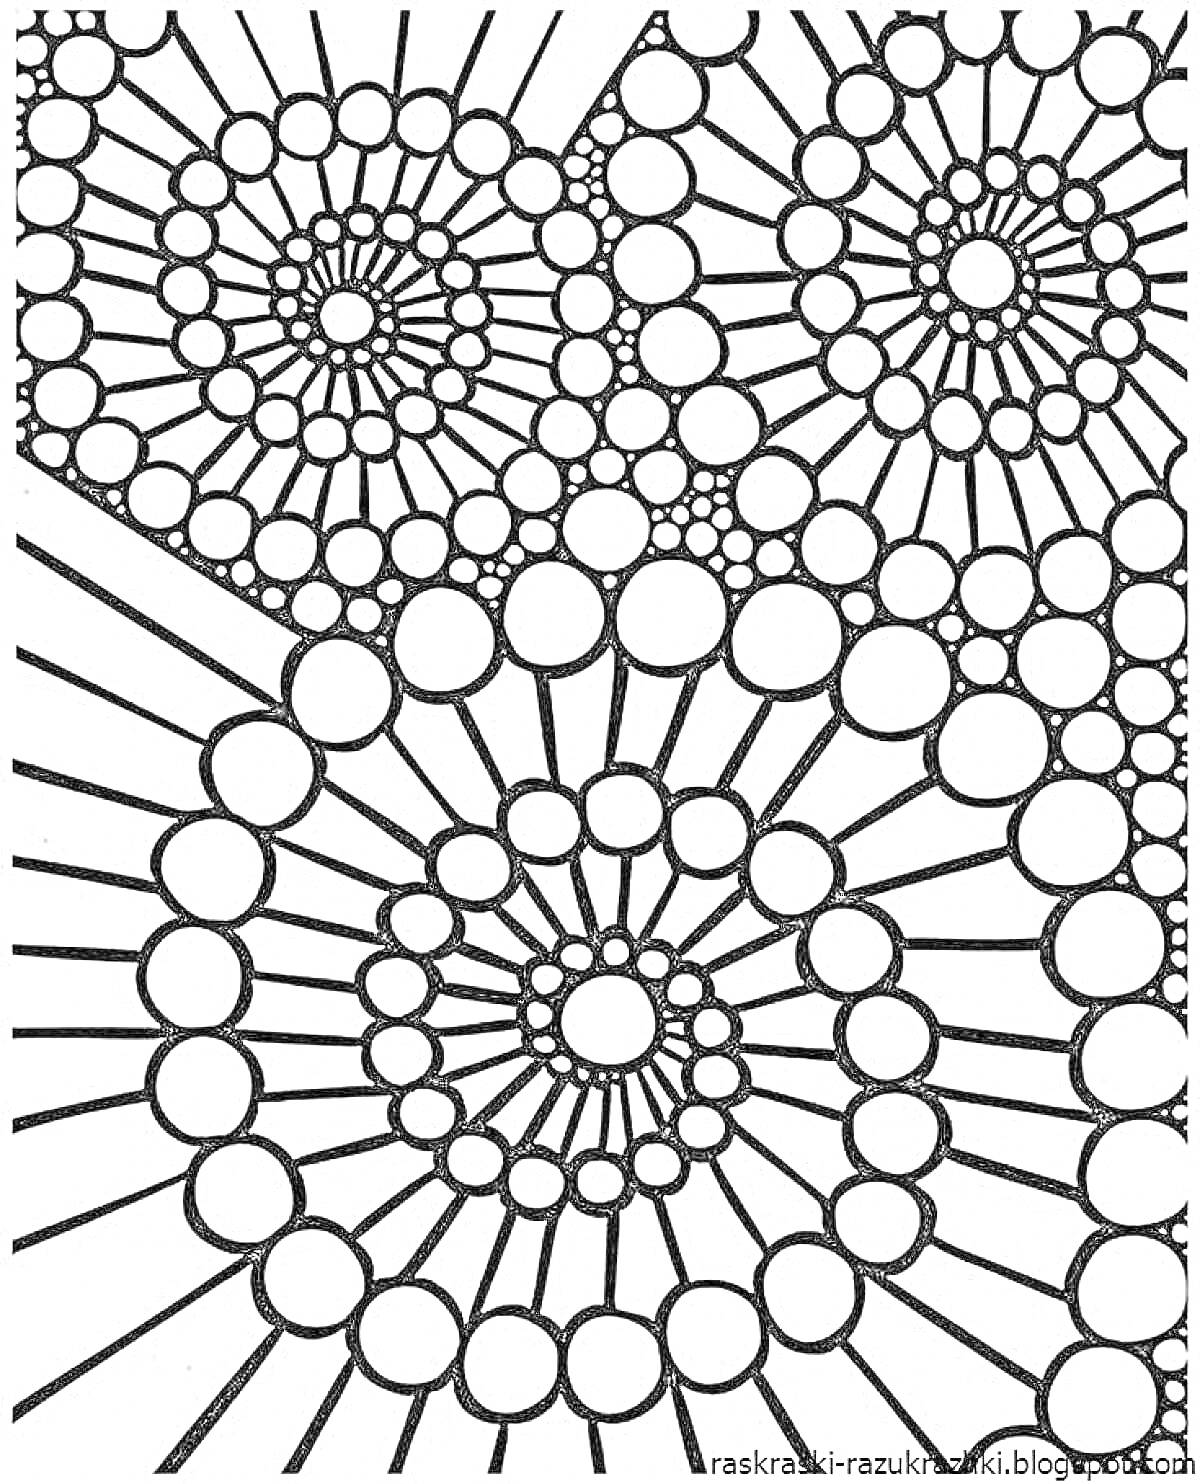 Раскраска Спиральный узор с кругами и линиями для раскраски